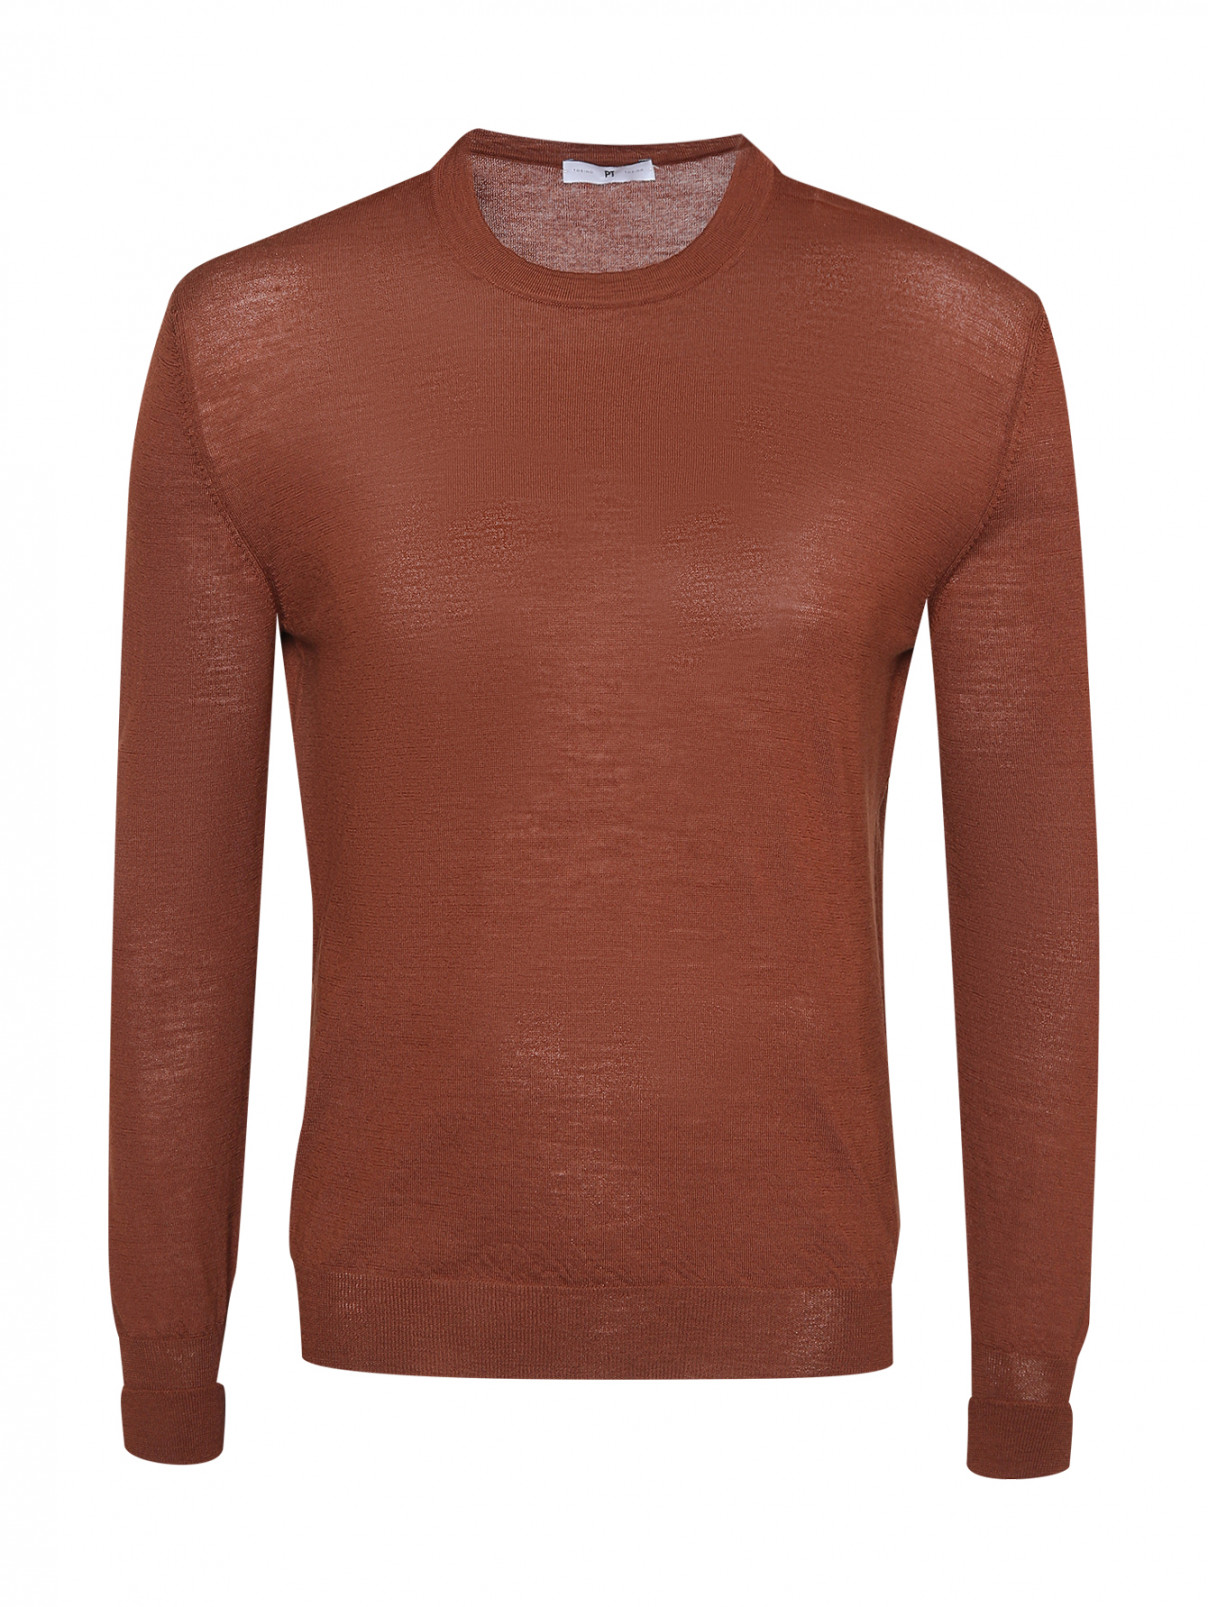 Джемпер из шерсти с длинными рукавами PT Torino  –  Общий вид  – Цвет:  Коричневый